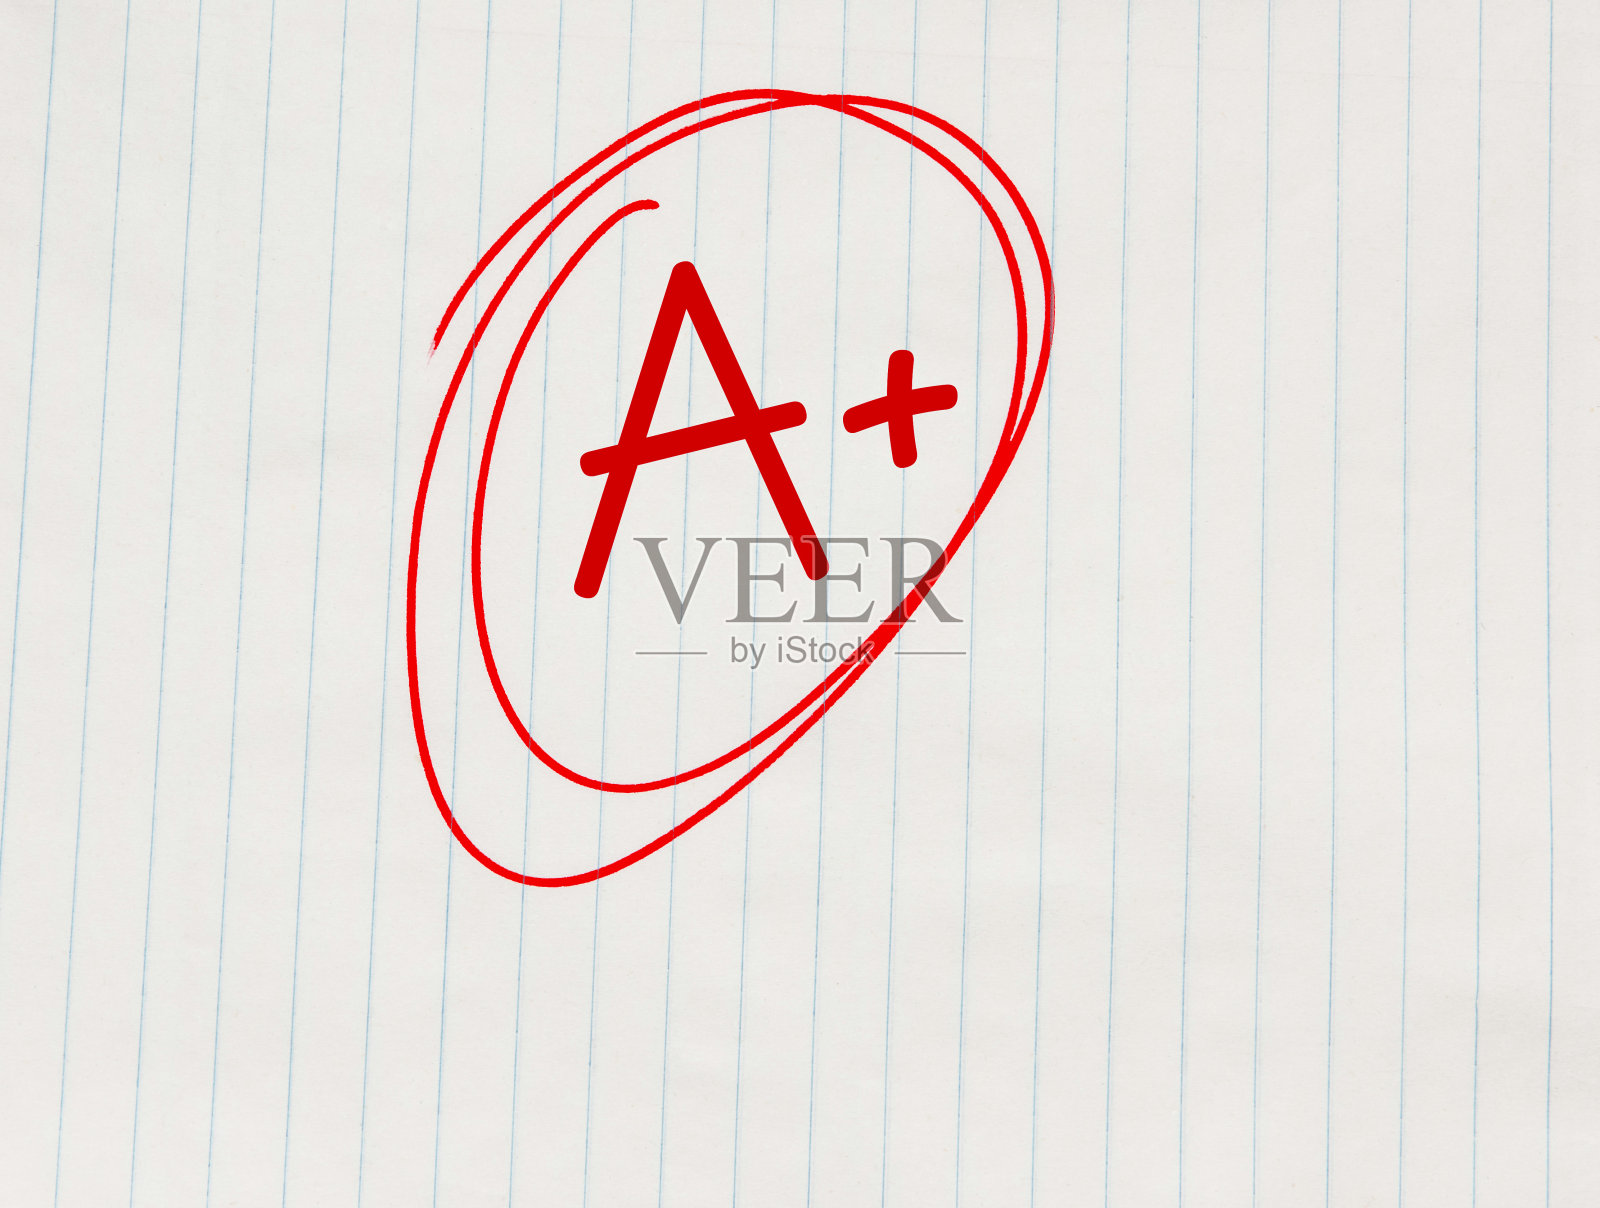 A+ (A+)用红笔写在笔记本纸上照片摄影图片